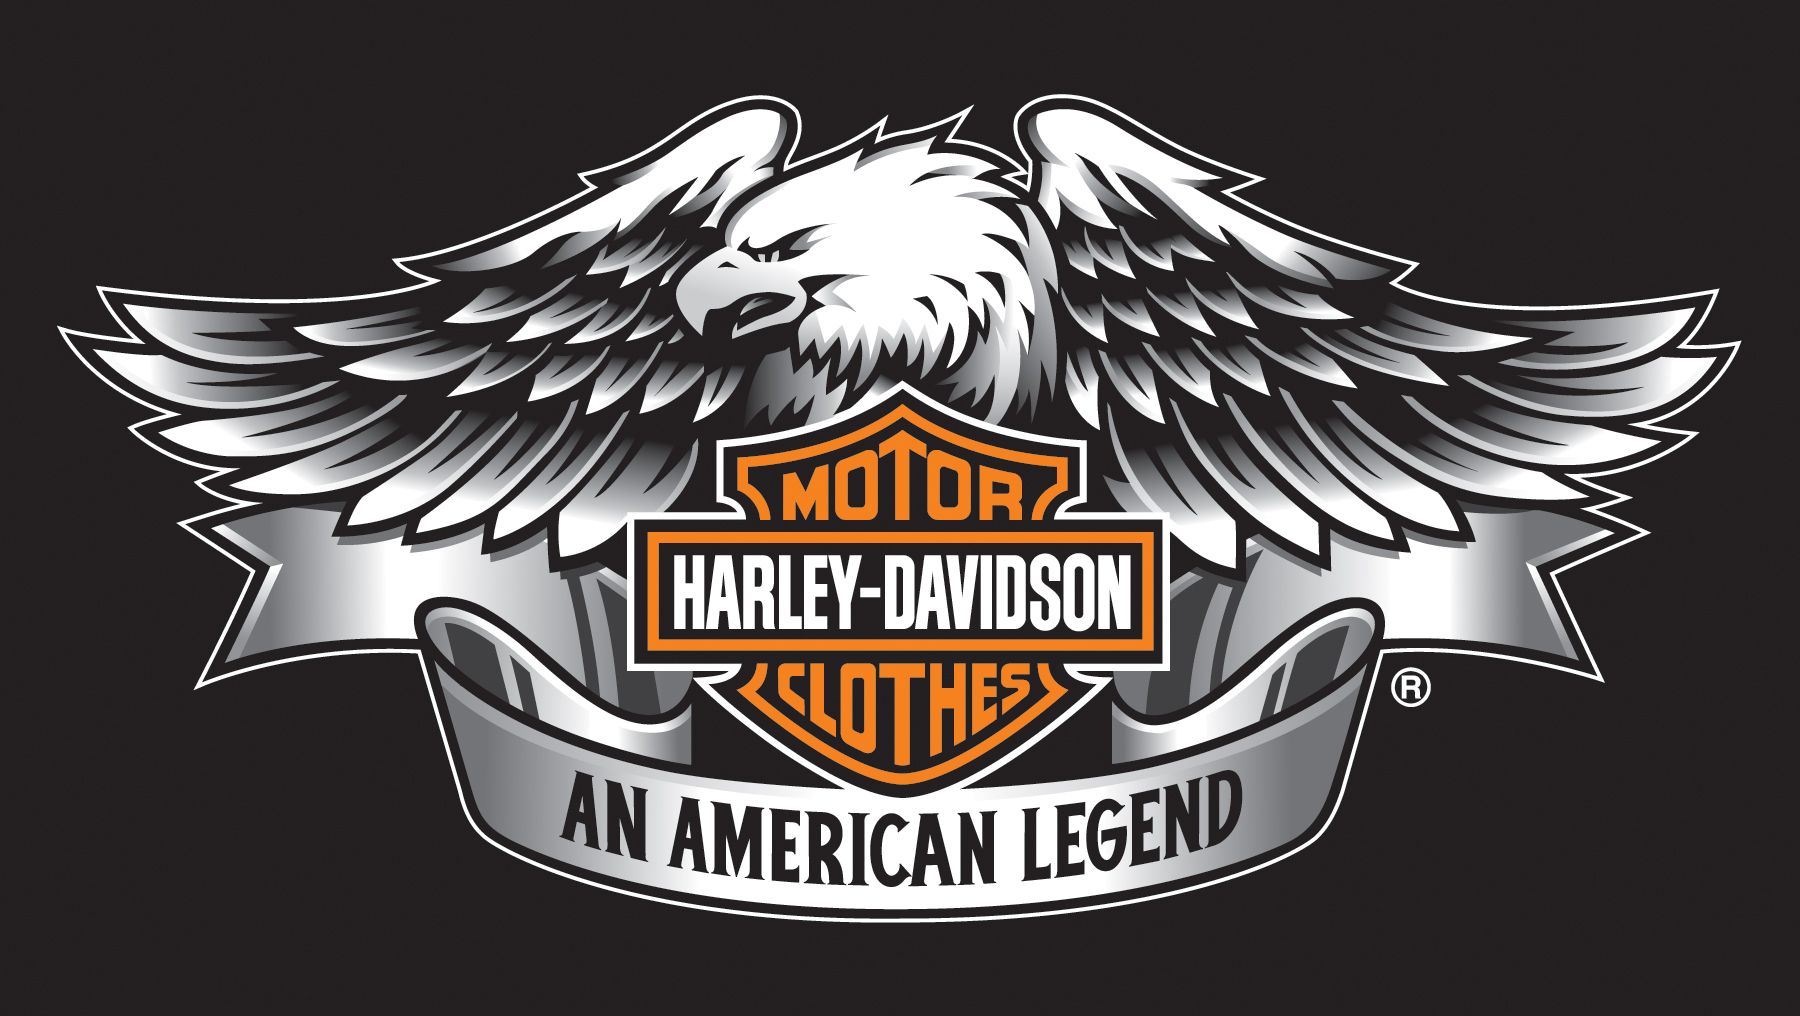 Harley Davidson Wallpaper Background Desktop iPhones Backgrounds